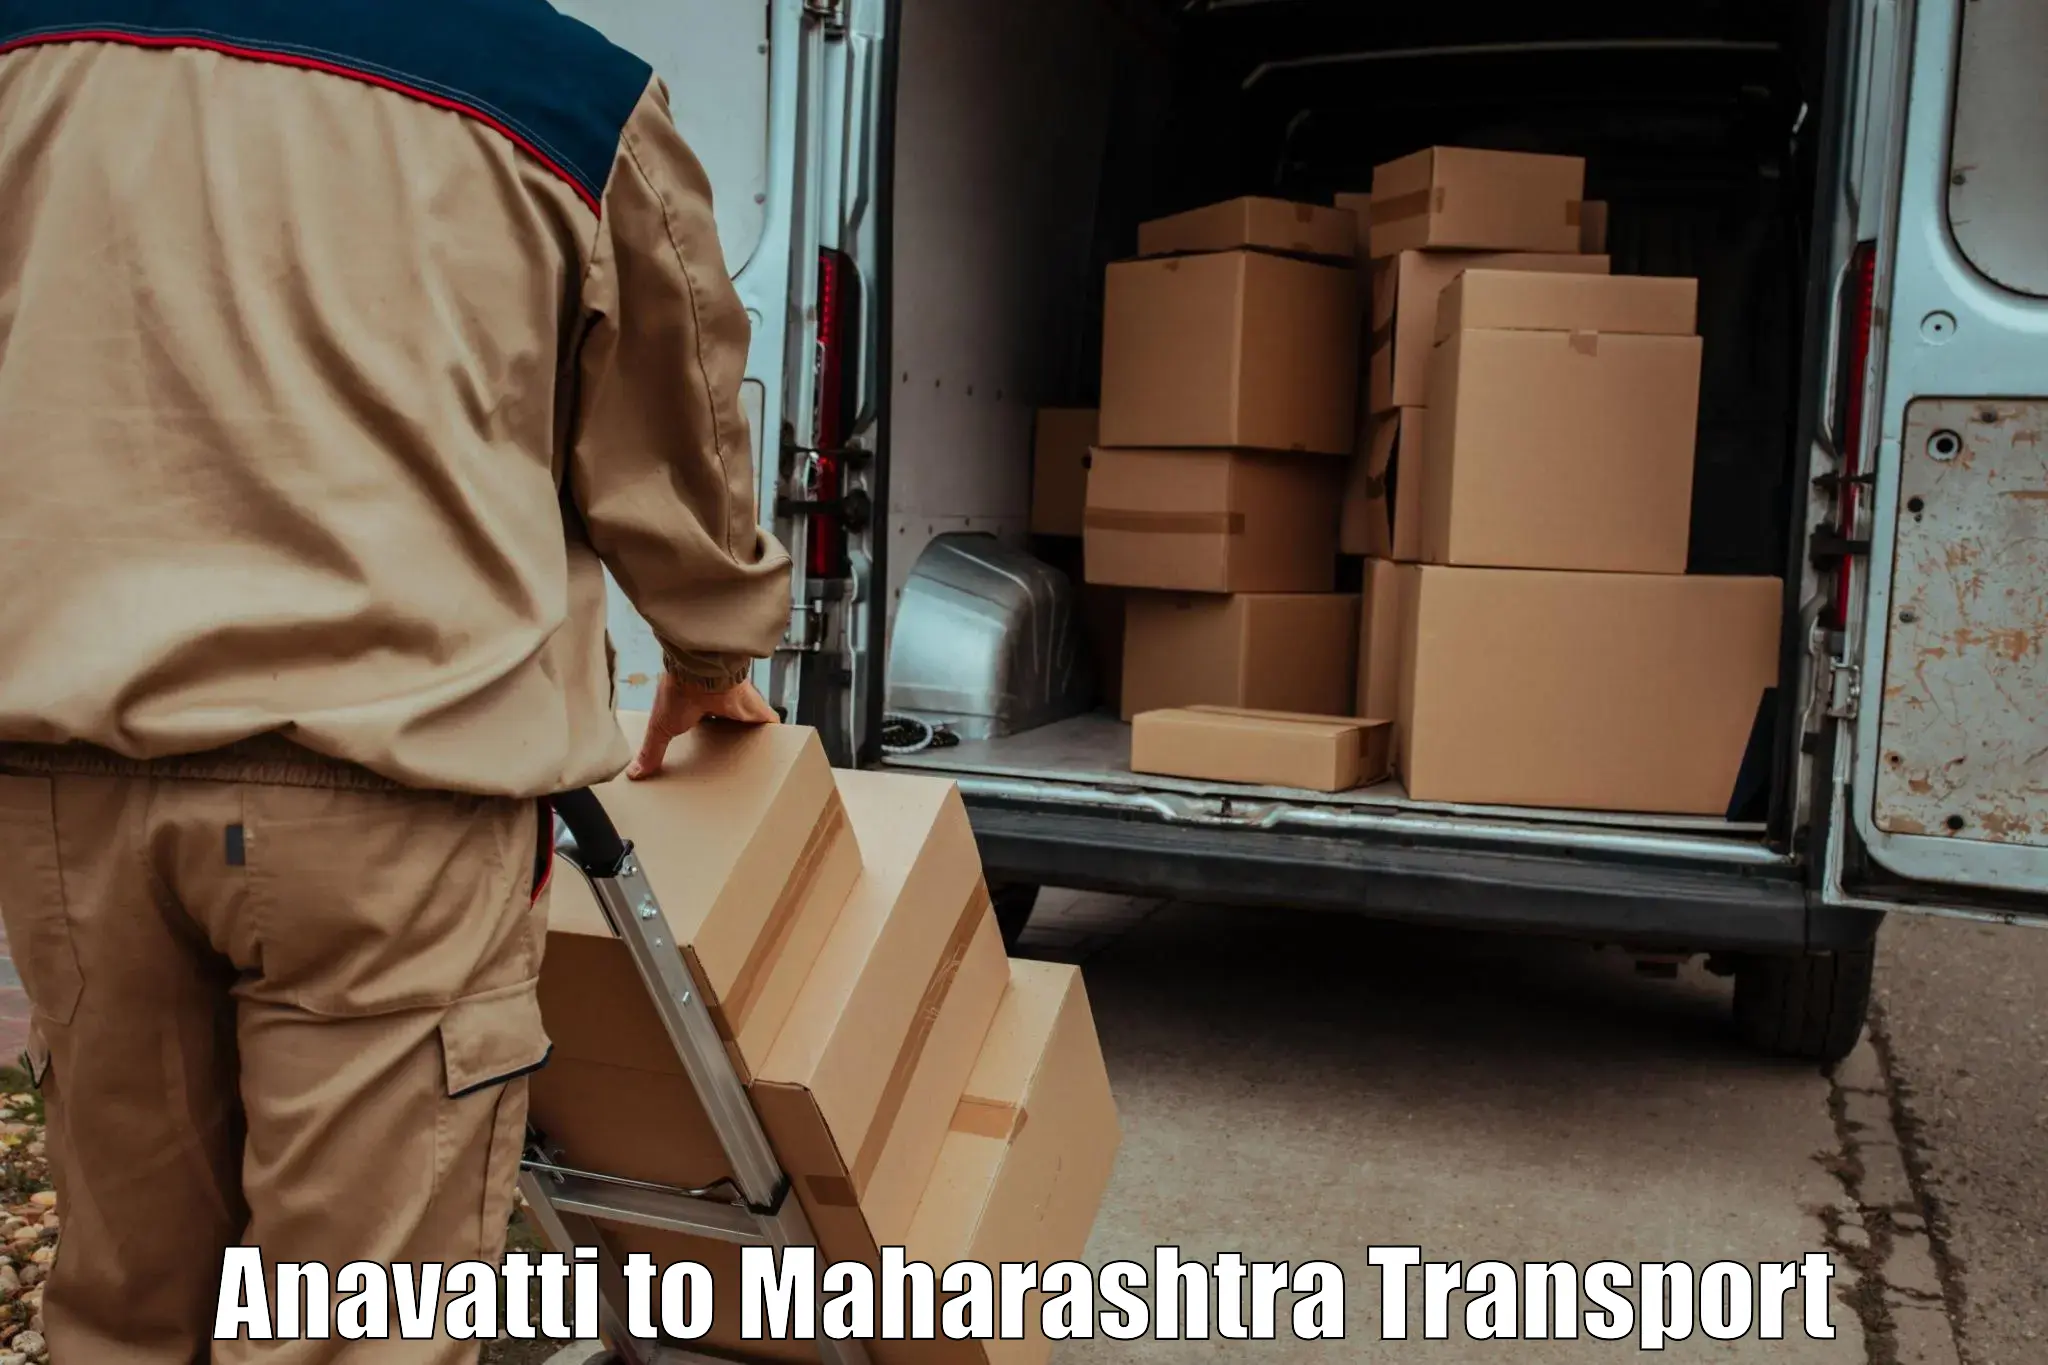 Delivery service Anavatti to Ojhar